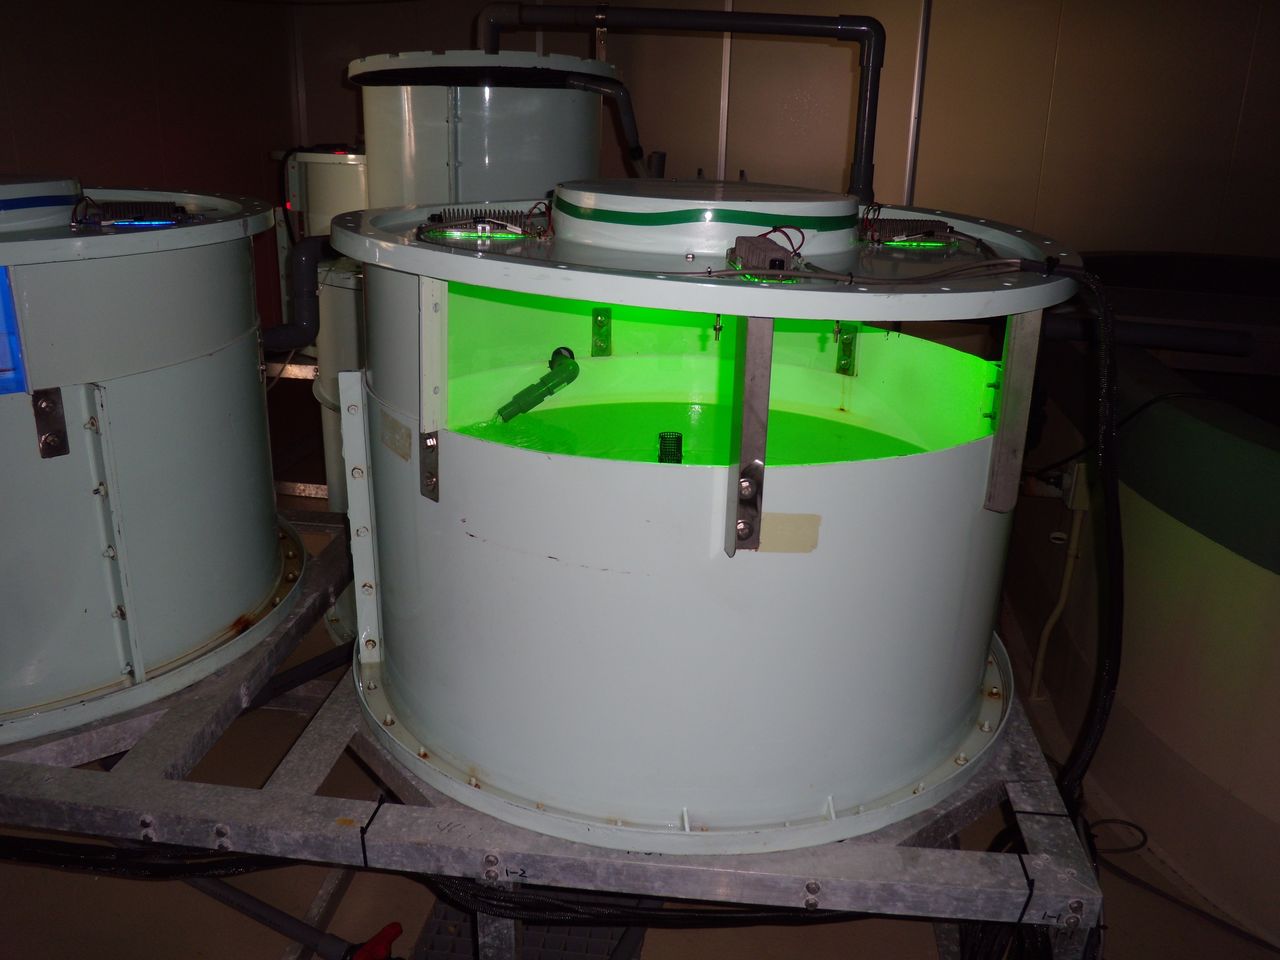 Cette cuve, éclairée par des diodes électroluminescentes vertes, a été utilisée lors d’expérimentations sur l’élevage du flet. (© École supérieure de biosciences marines de l'Université Kitasato)